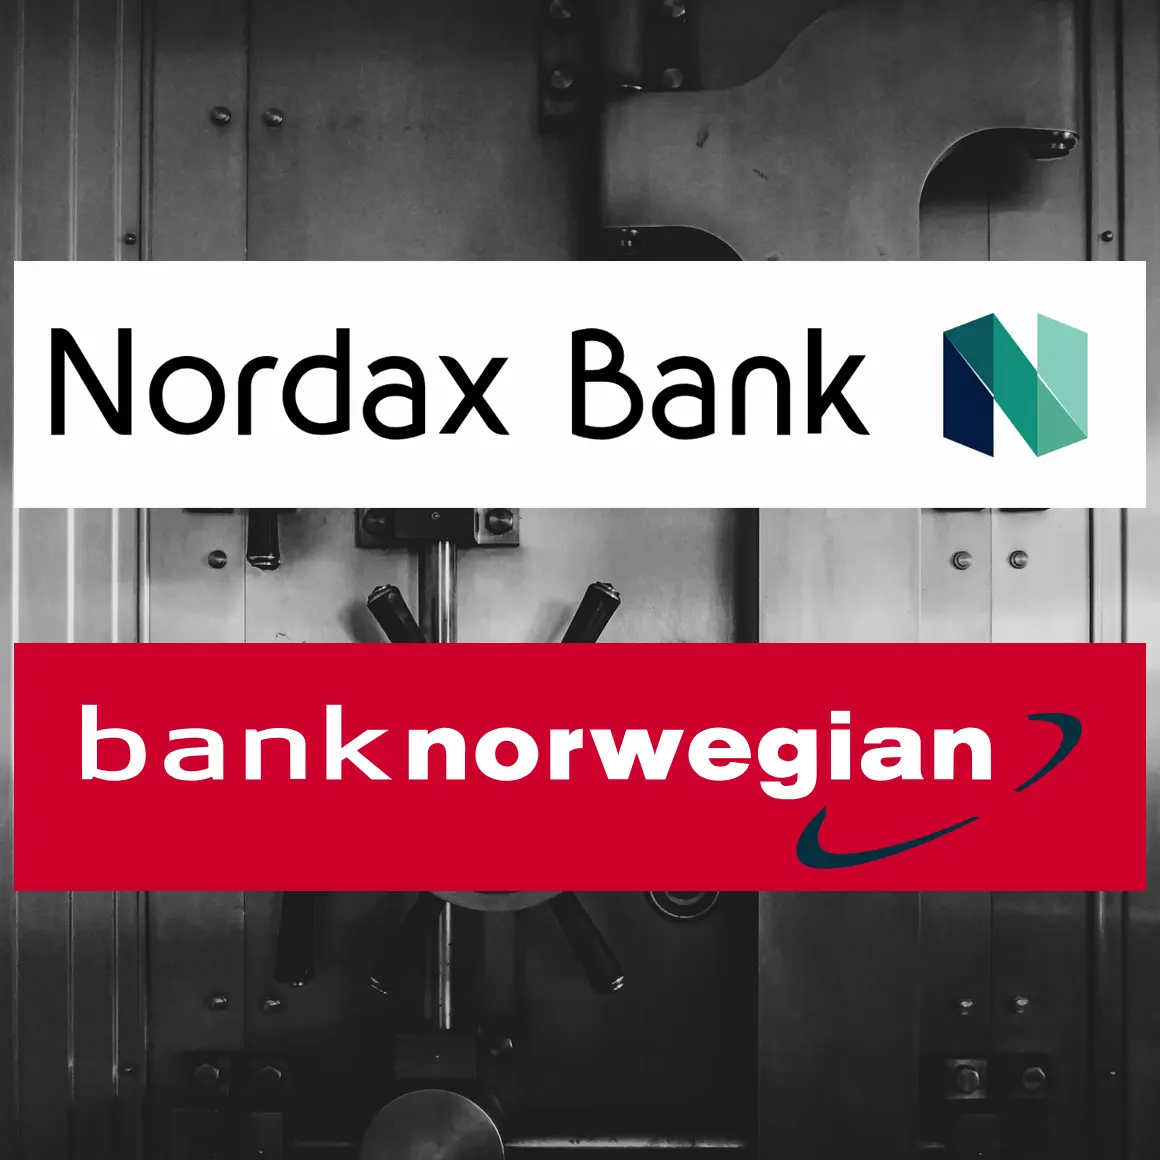 nordax-bank-norwegian